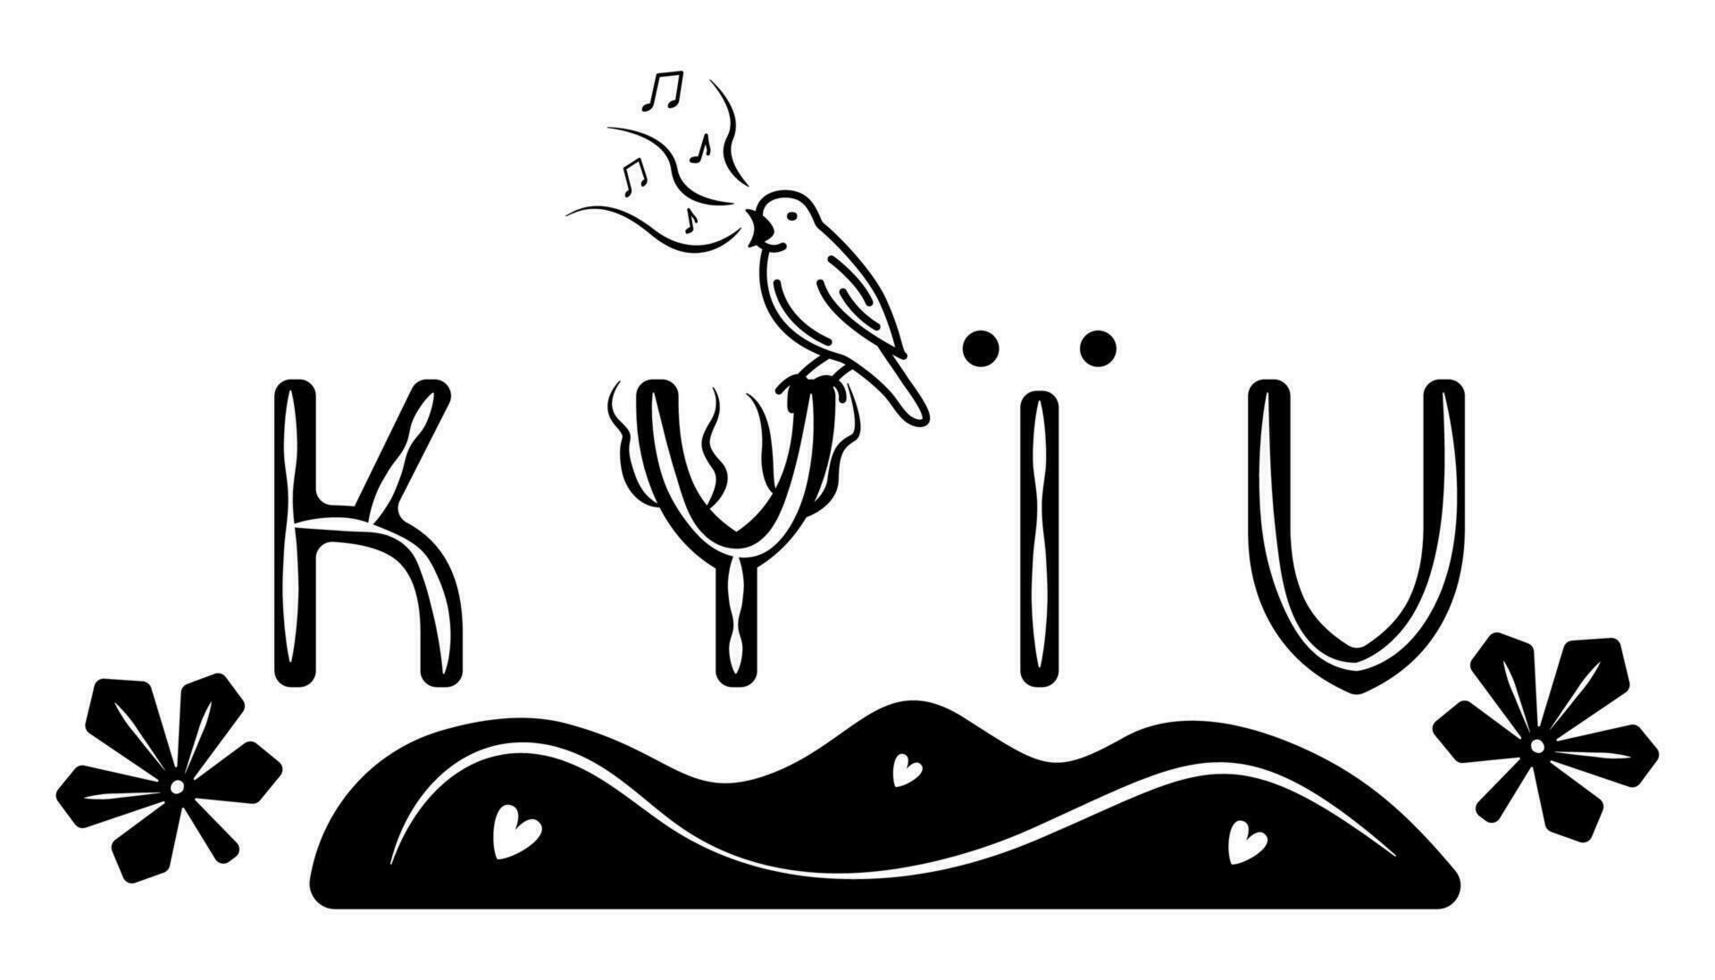 kyiv impression des lettres et symboles, noir et blanc vecteur illustration